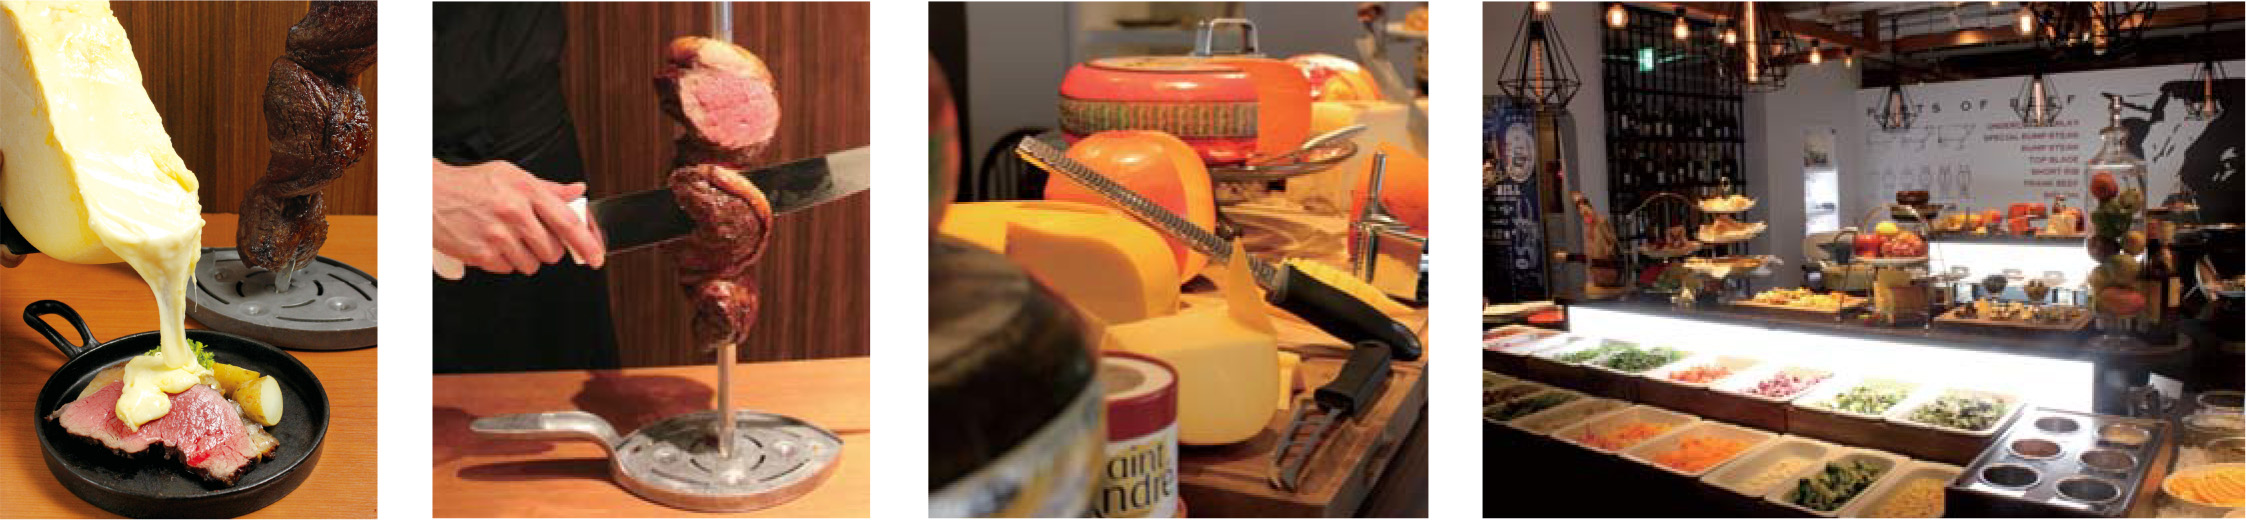 世界のチーズが食べ放題のビュッフェが付いた 本格チーズシュラスコ とろ りラクレットチーズを贅沢にかける スキレット グリルのランプステーキ 種類以上のチーズを使用した料理とボリューム感のある肉料理が味わえる Prでっせ